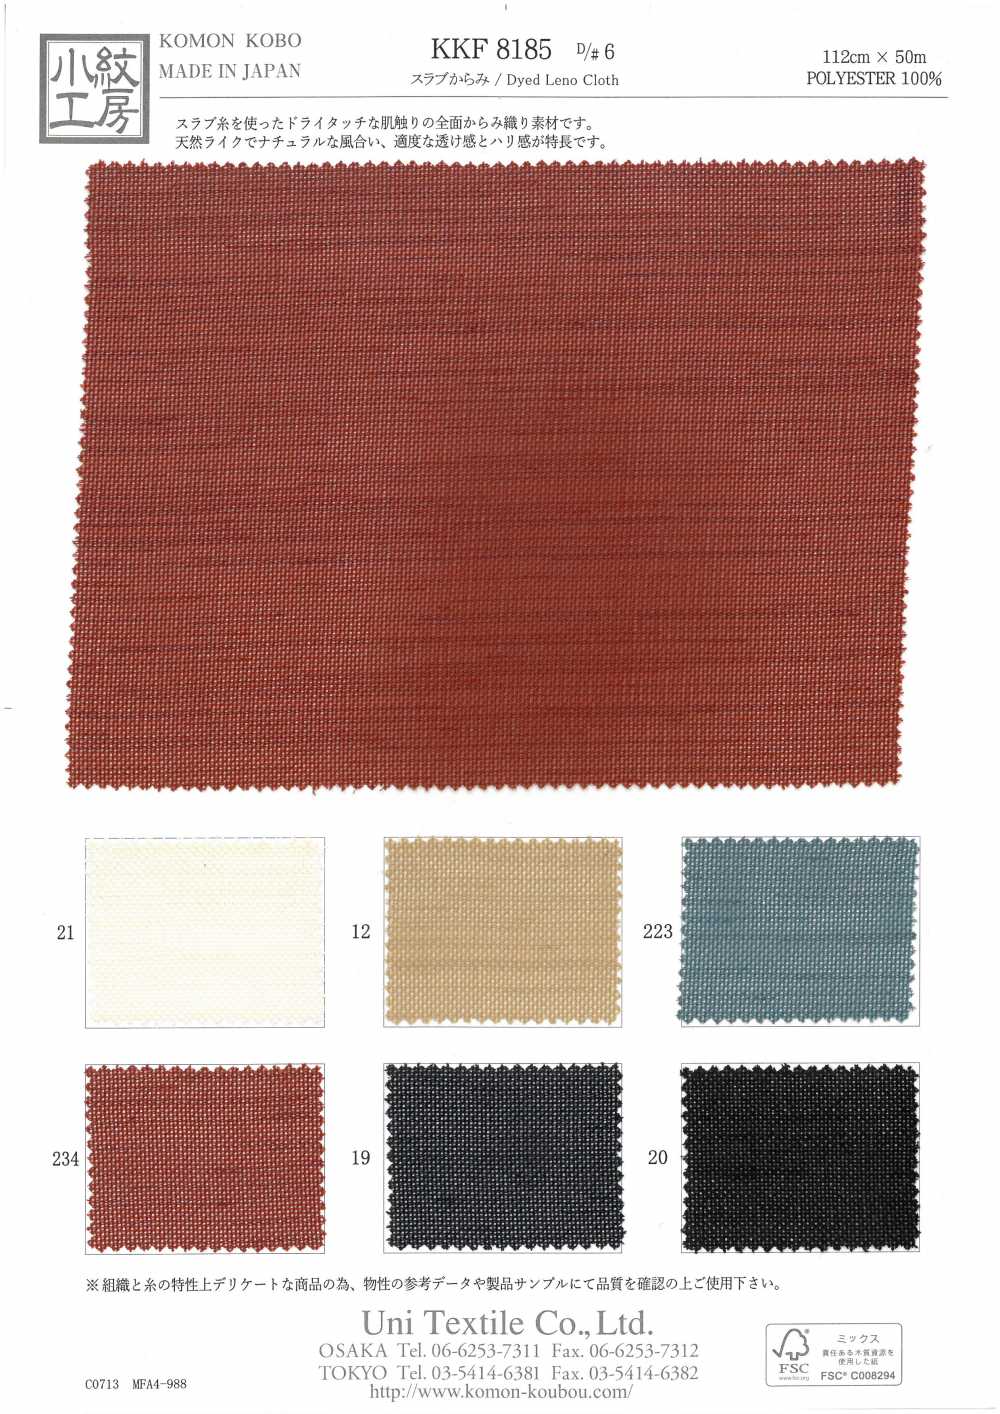 KKF8185-D/6 Dalla Lastra[Tessile / Tessuto] Uni Textile